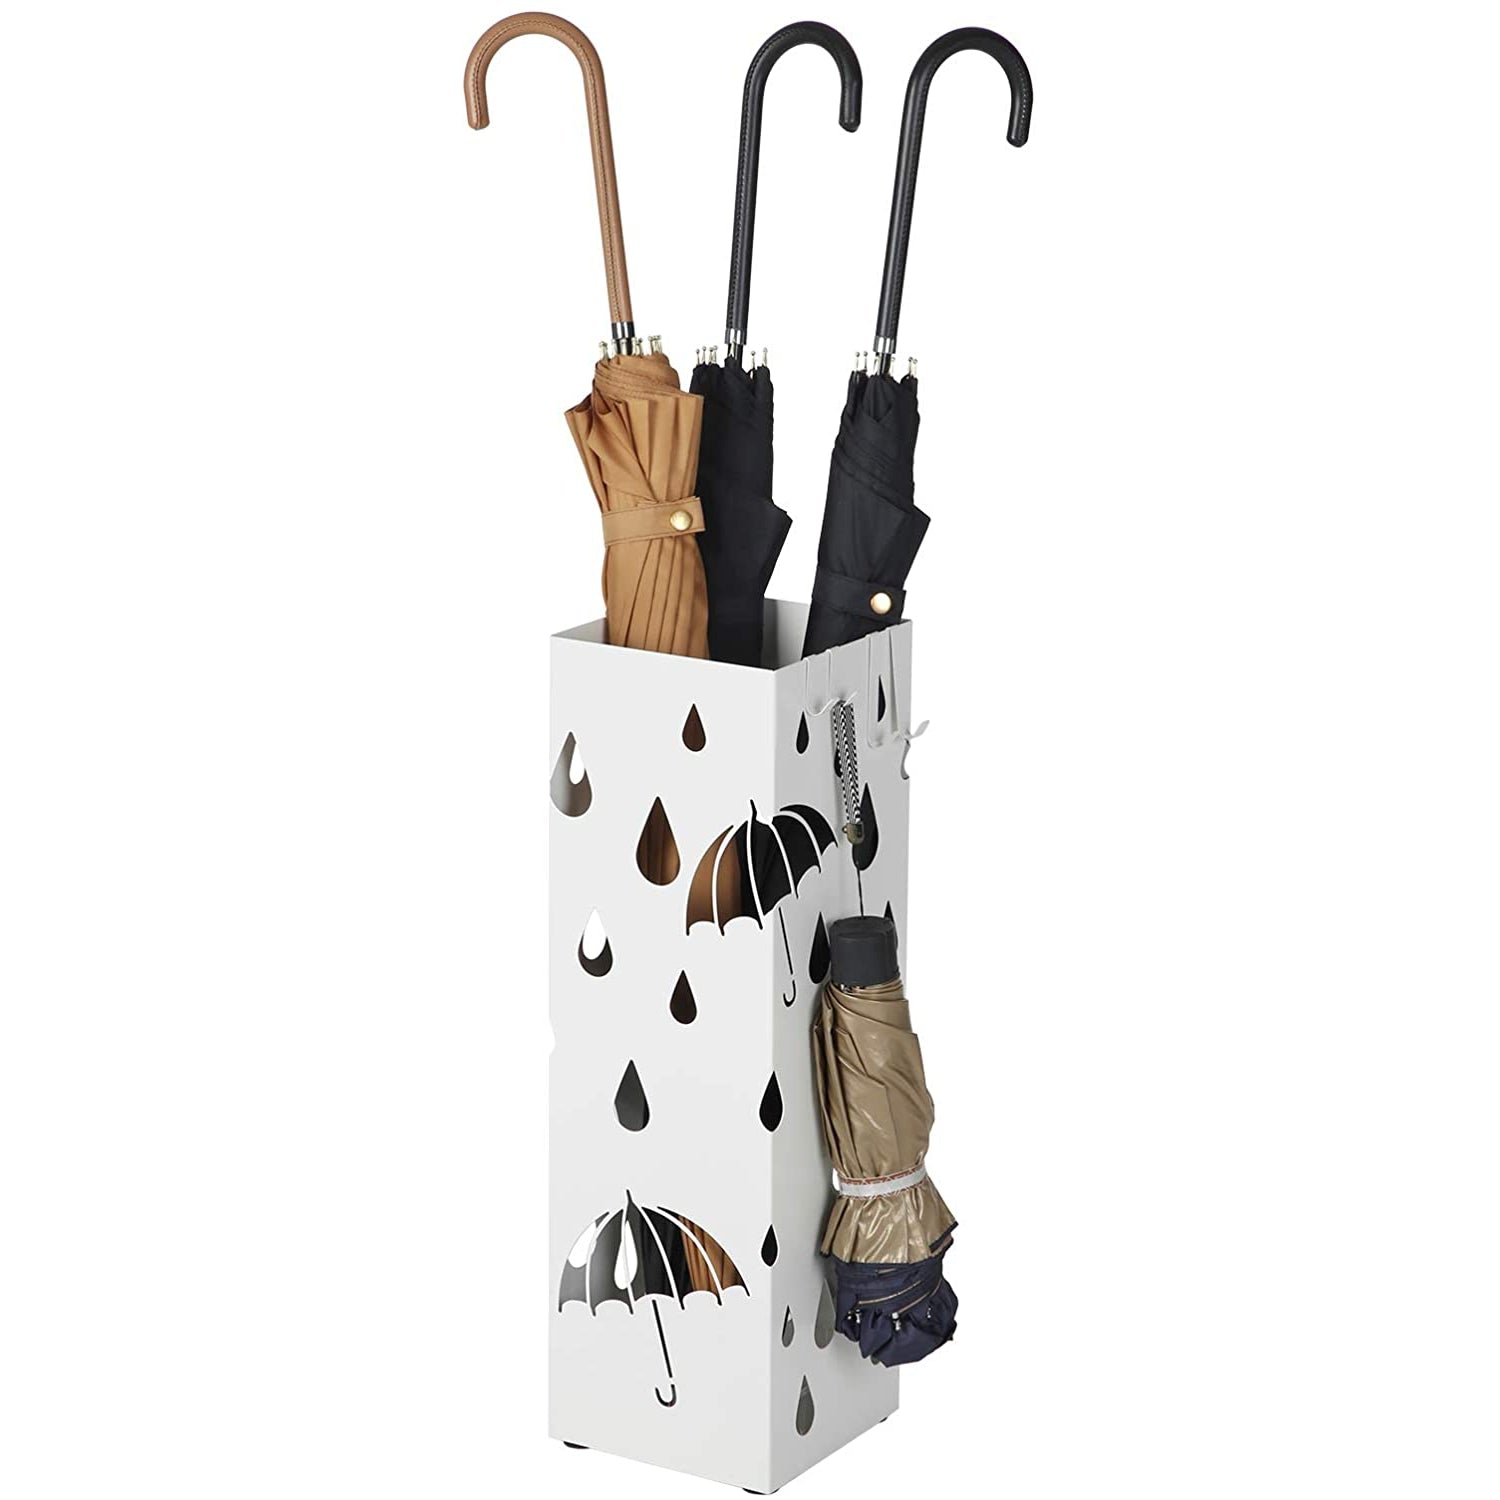 Porte-parapluie Nancy's Blanc - Porte-parapluie en métal motif pluie 49 CM de haut